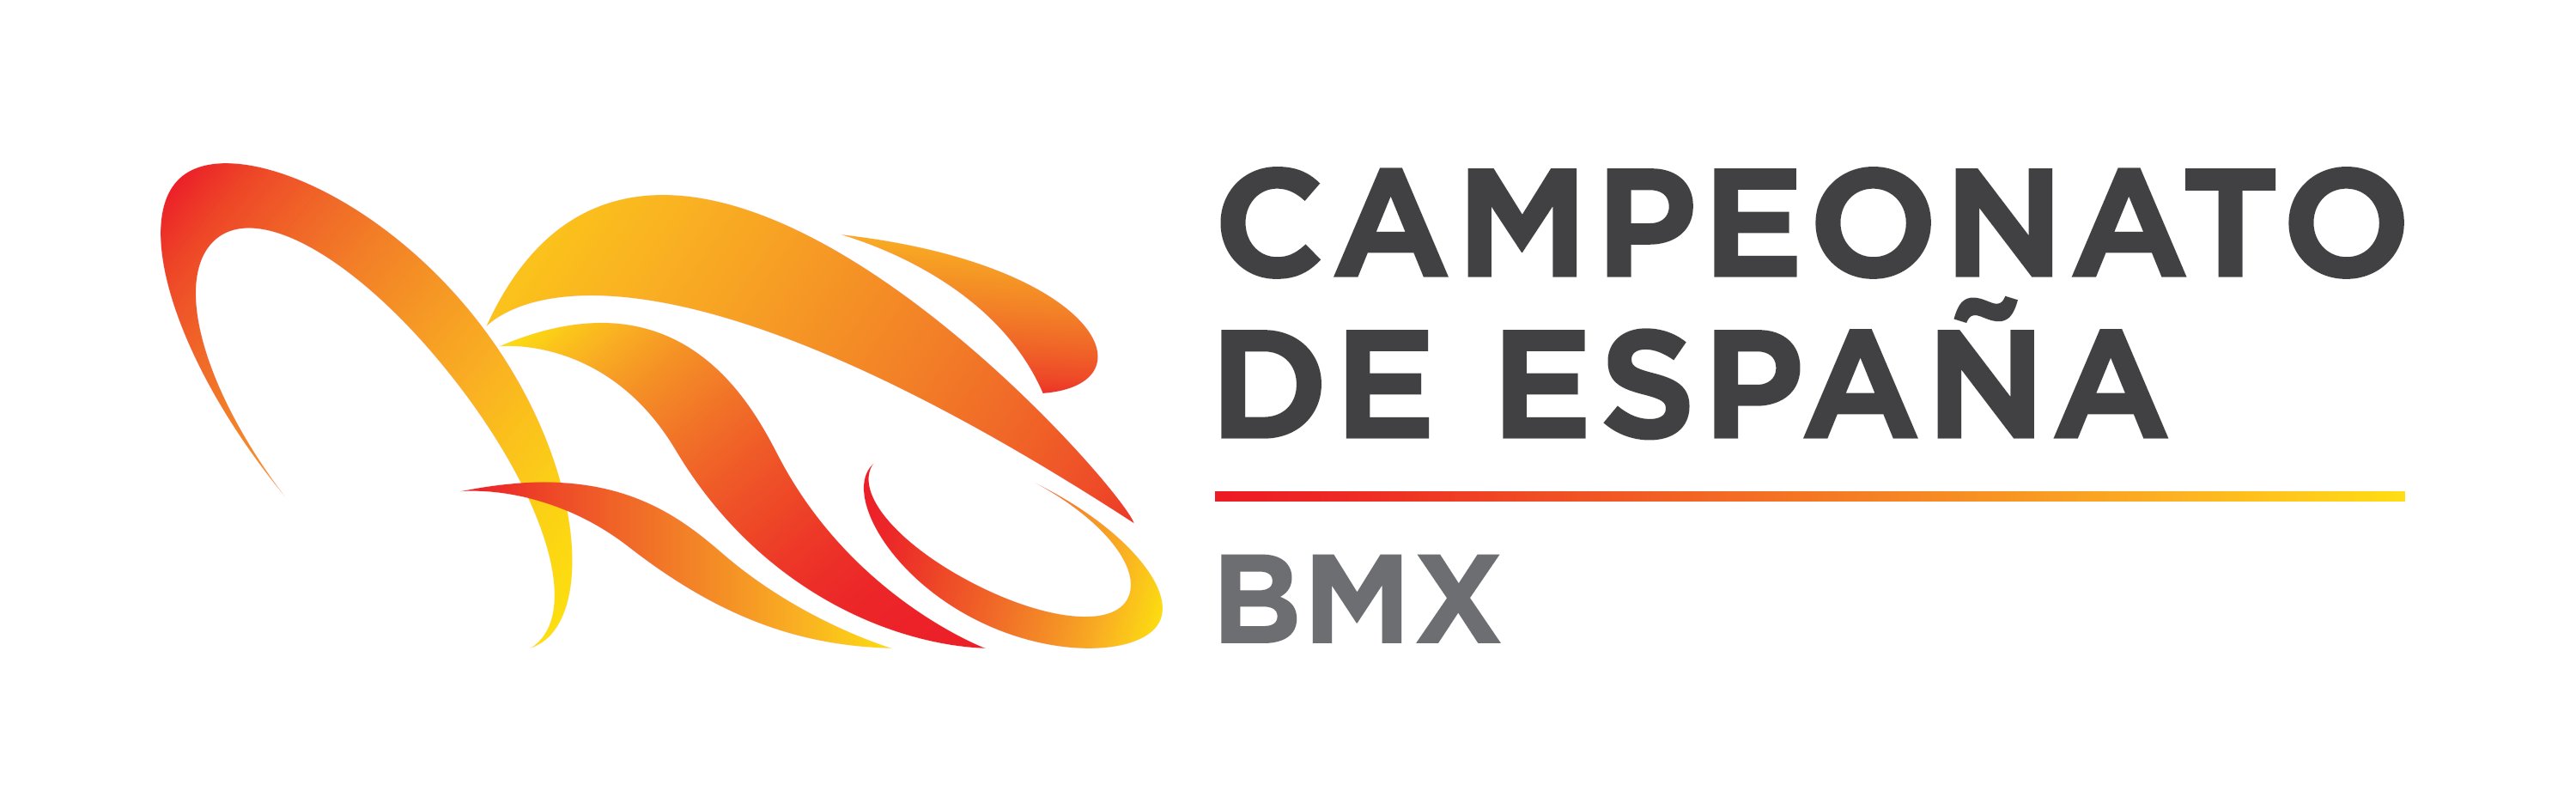 Convocatoria Selección Andaluza para Campeonato de España BMX 2021